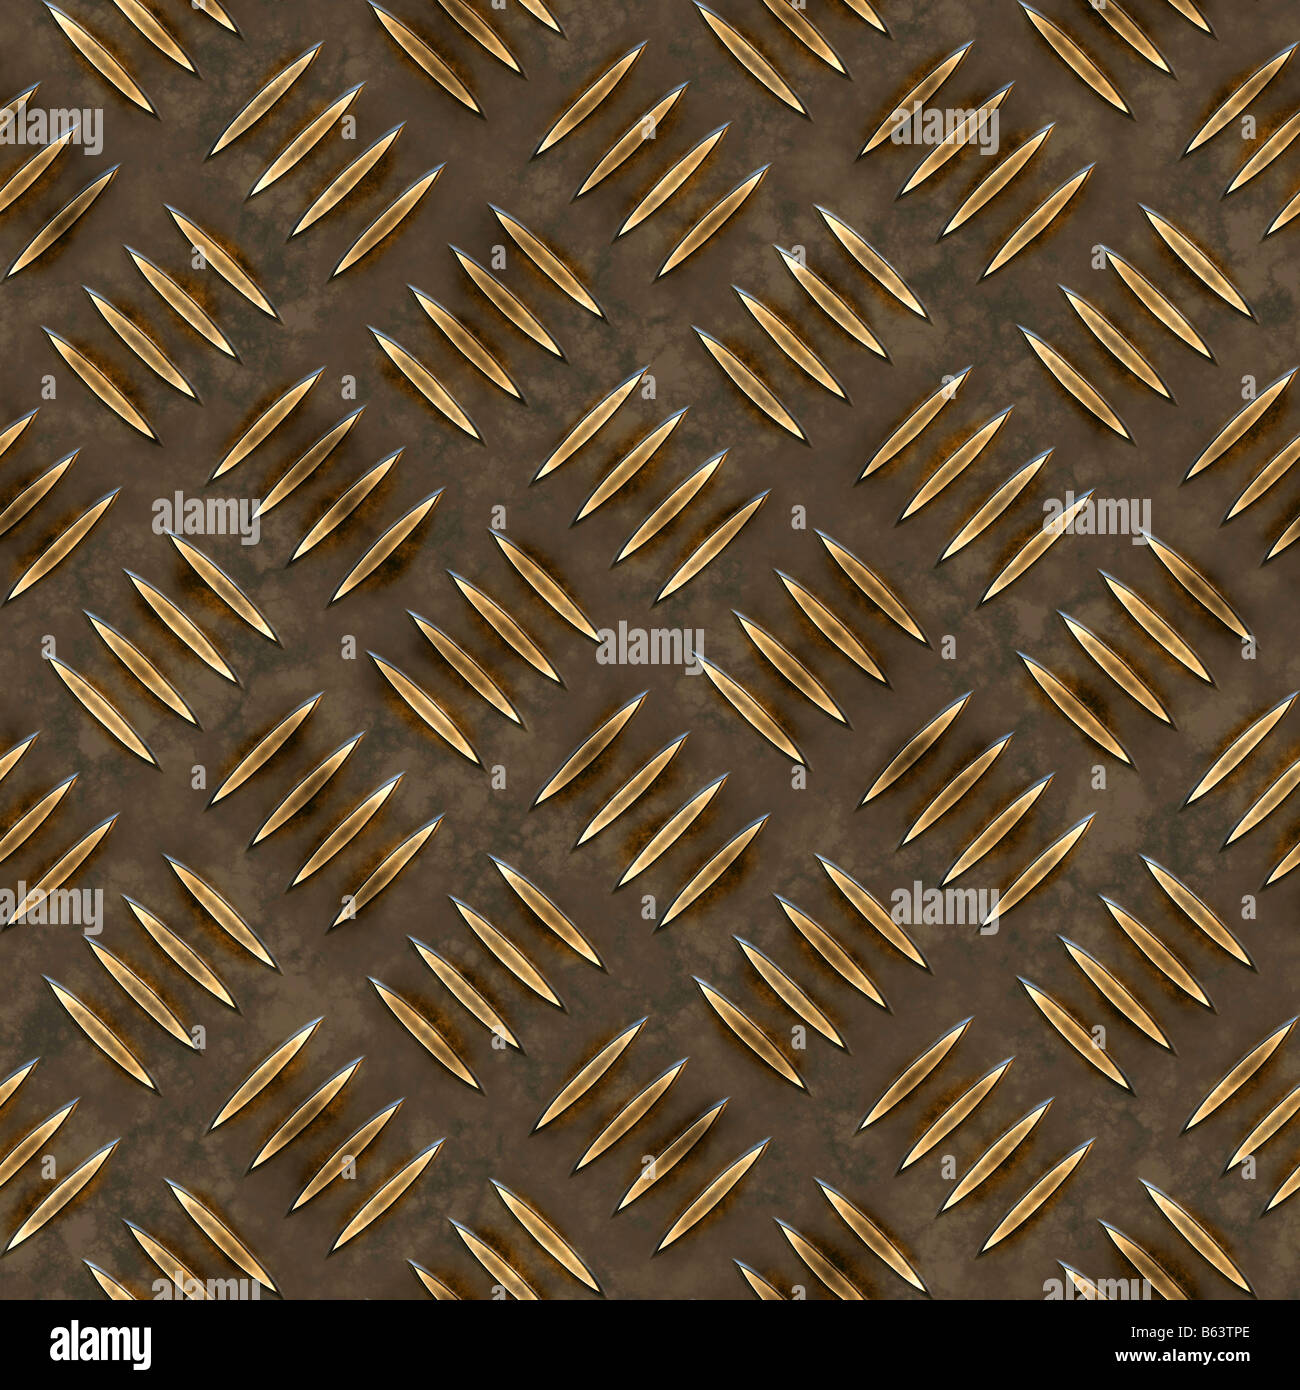 Placa de Diamante de oro oscuro que las baldosas de textura perfectamente como un patrón en cualquier dirección Foto de stock